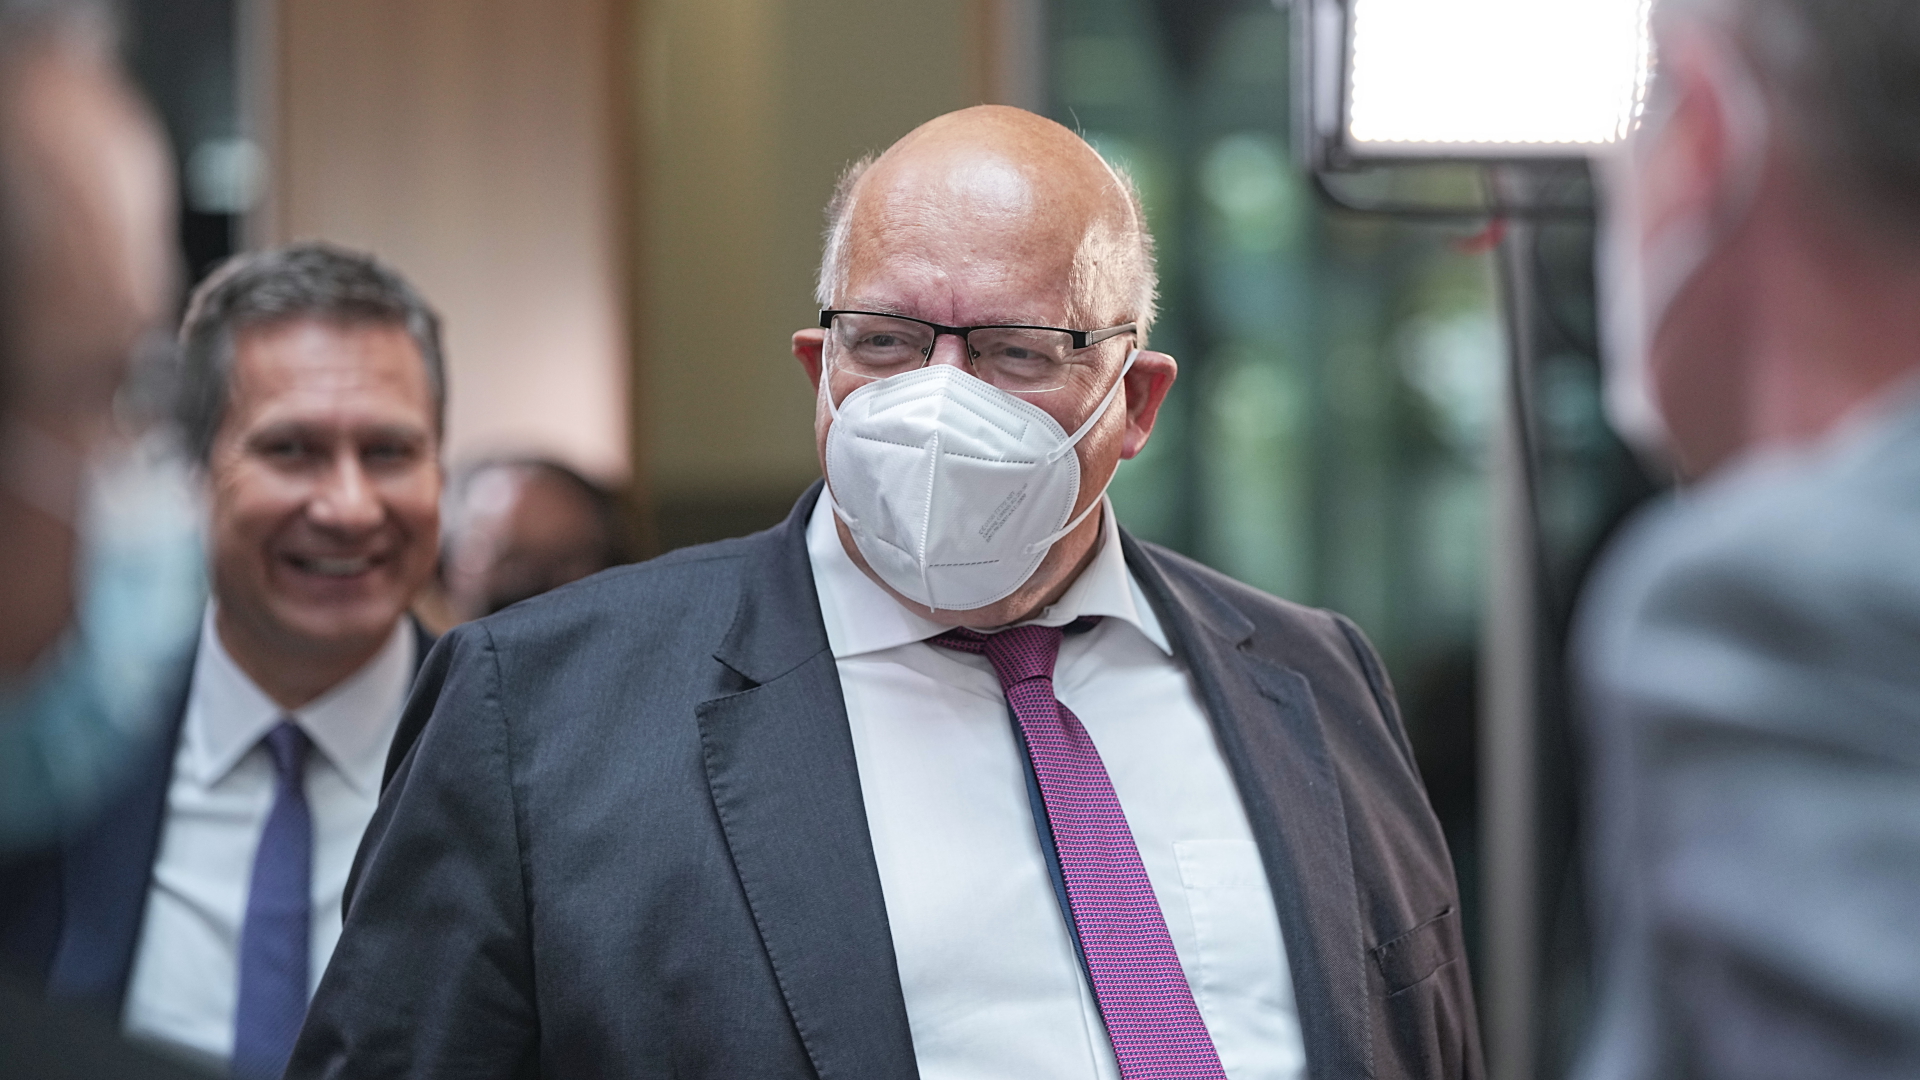  Wirtschaftsminister Peter Altmaier (CDU)trägt eine FFP2-Maske nach den Gremiensitzungen der Partei nach der Bundestagswahl 2021 im Konrad-Adenauer-Haus.  | dpa